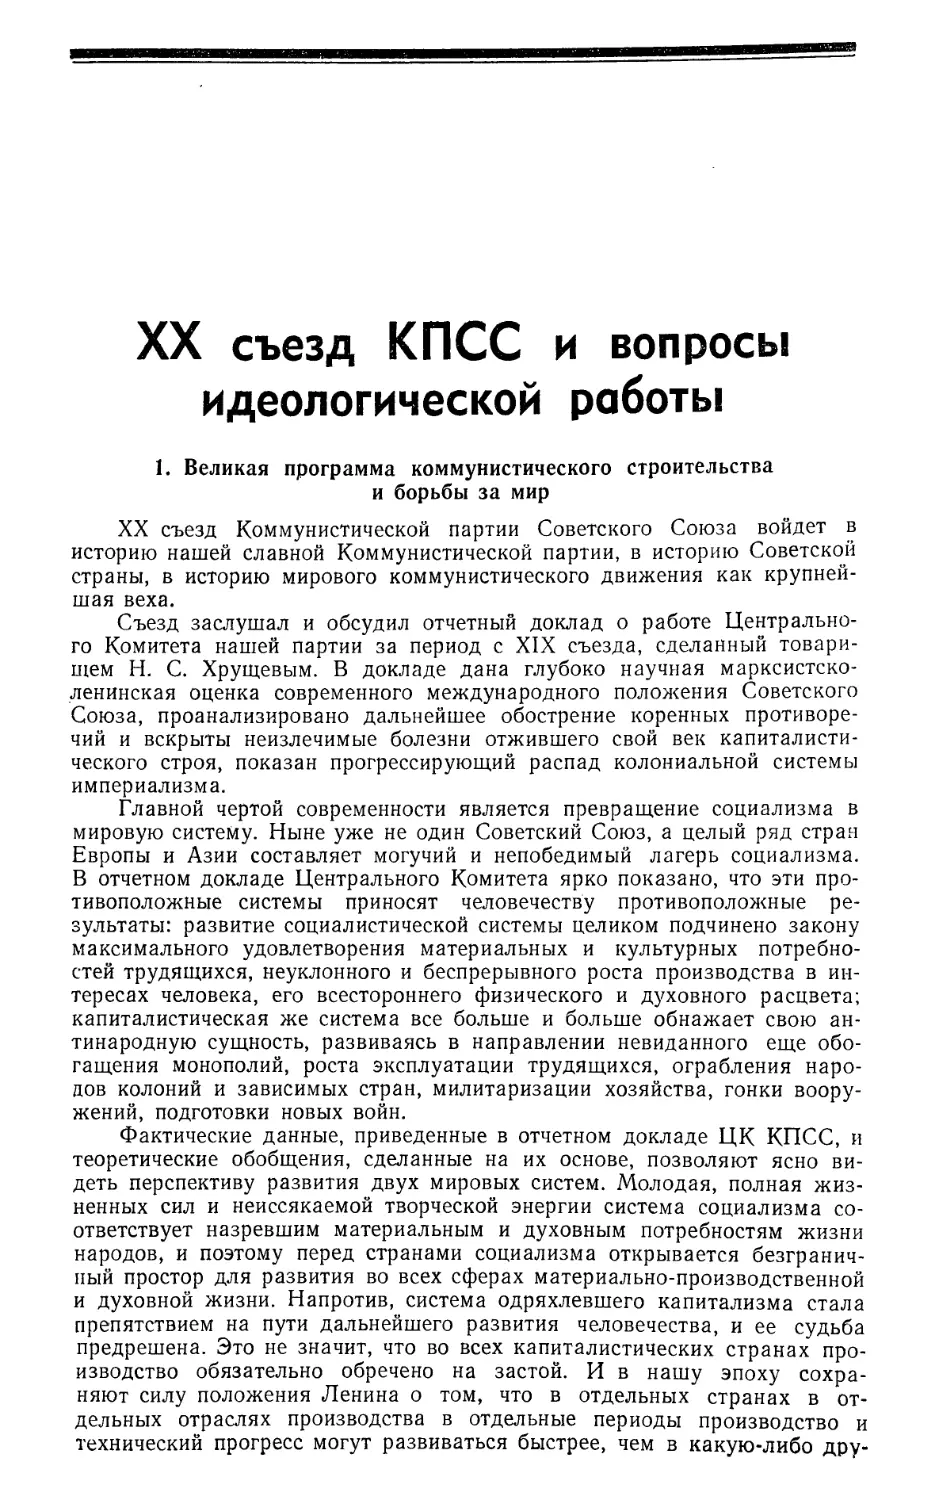 Передовая — XX съезд КПСС и вопросы идеологической работы